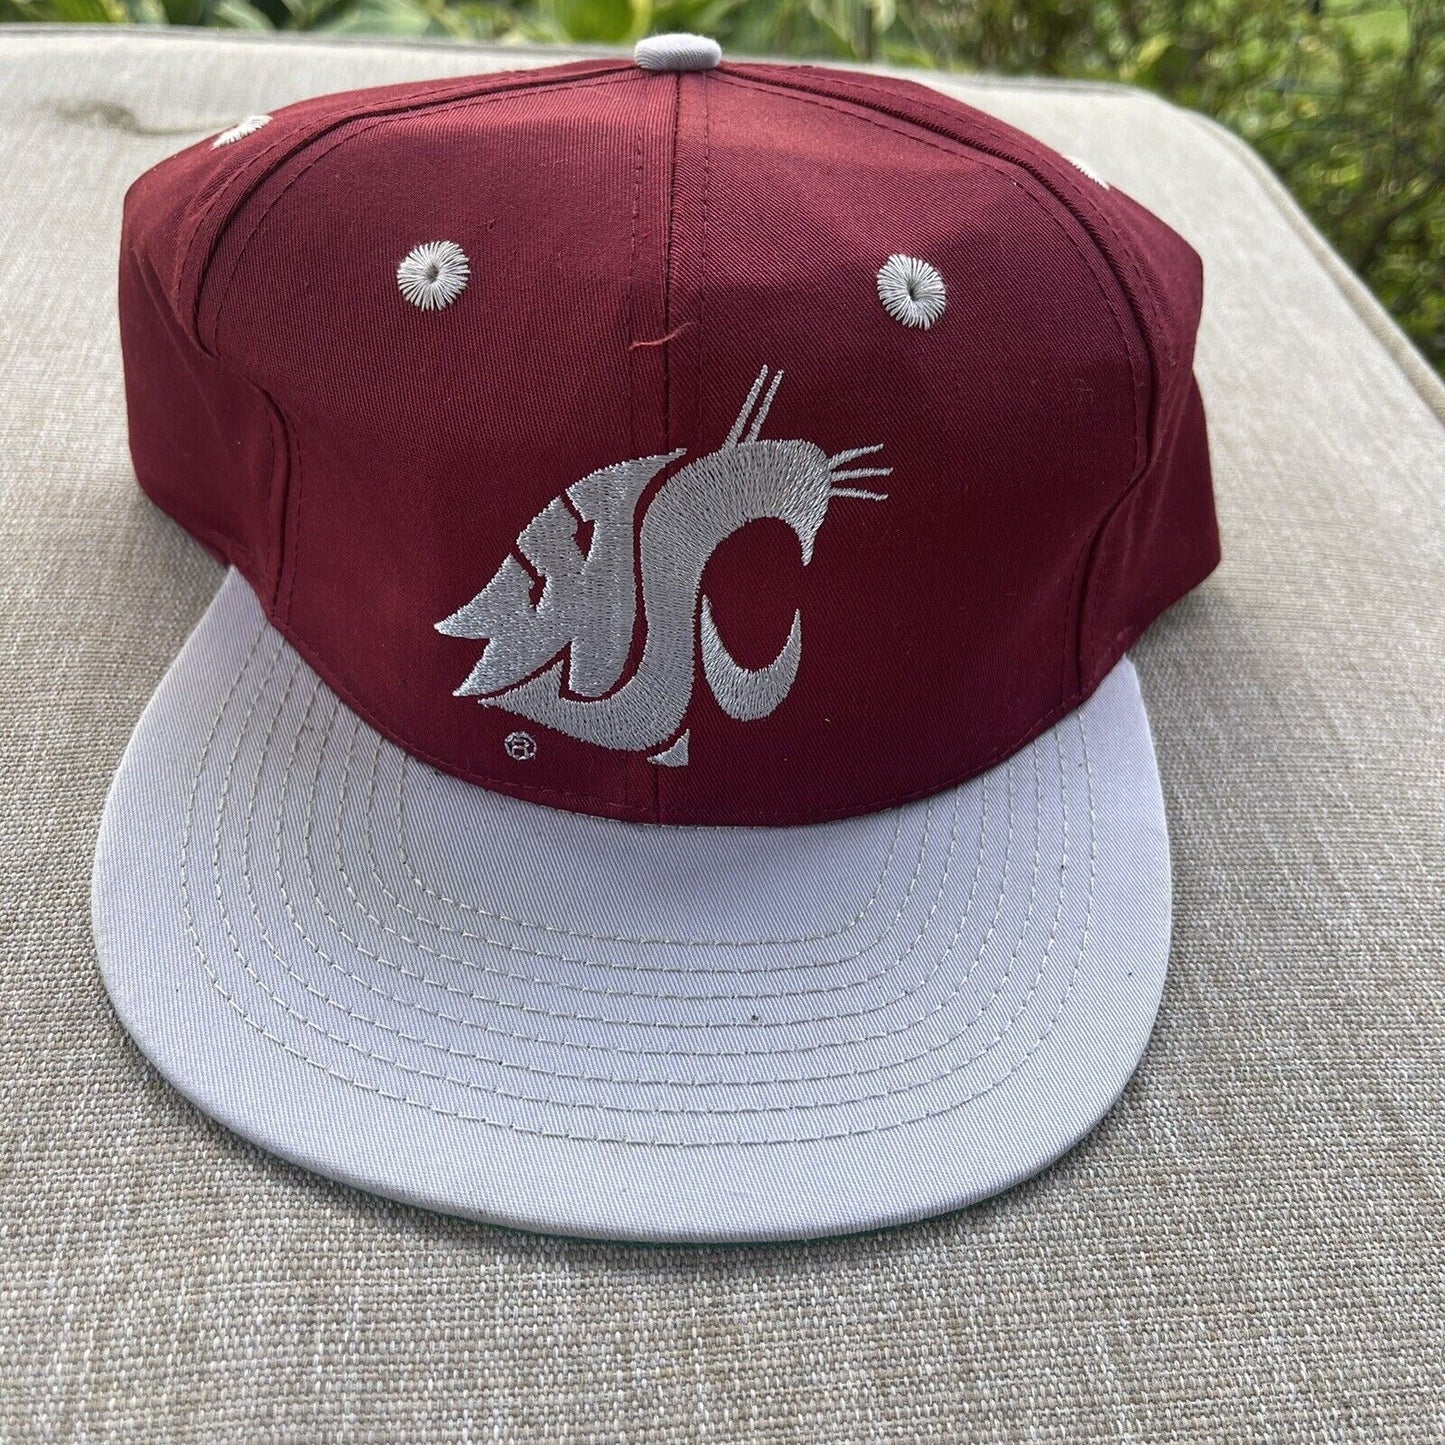 Vintage Washington State University Cougars Hat SnapBack